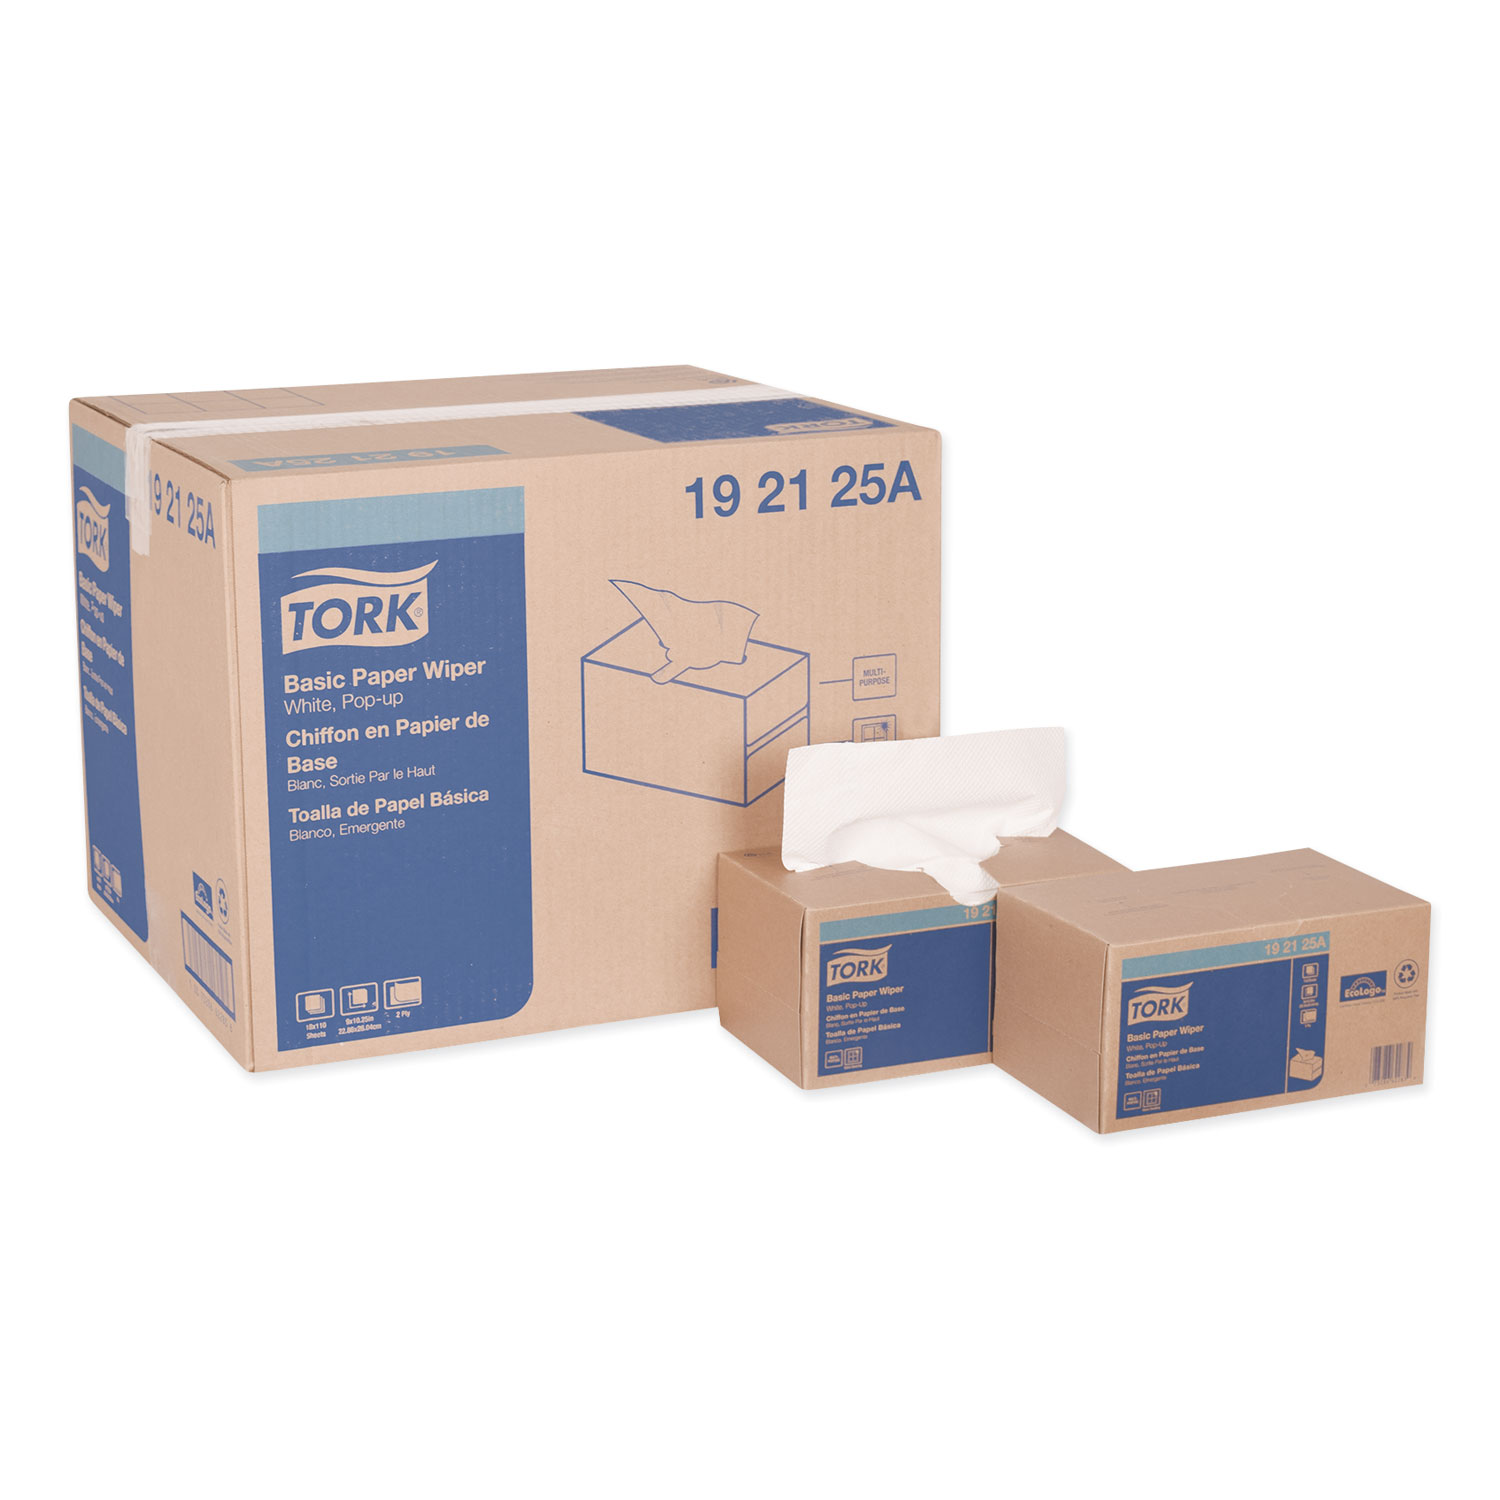  Tork 192125A Multipurpose Paper Wiper, 9 x 10.25, White, 110/Box, 18 Boxes/Carton (TRK192125A) 